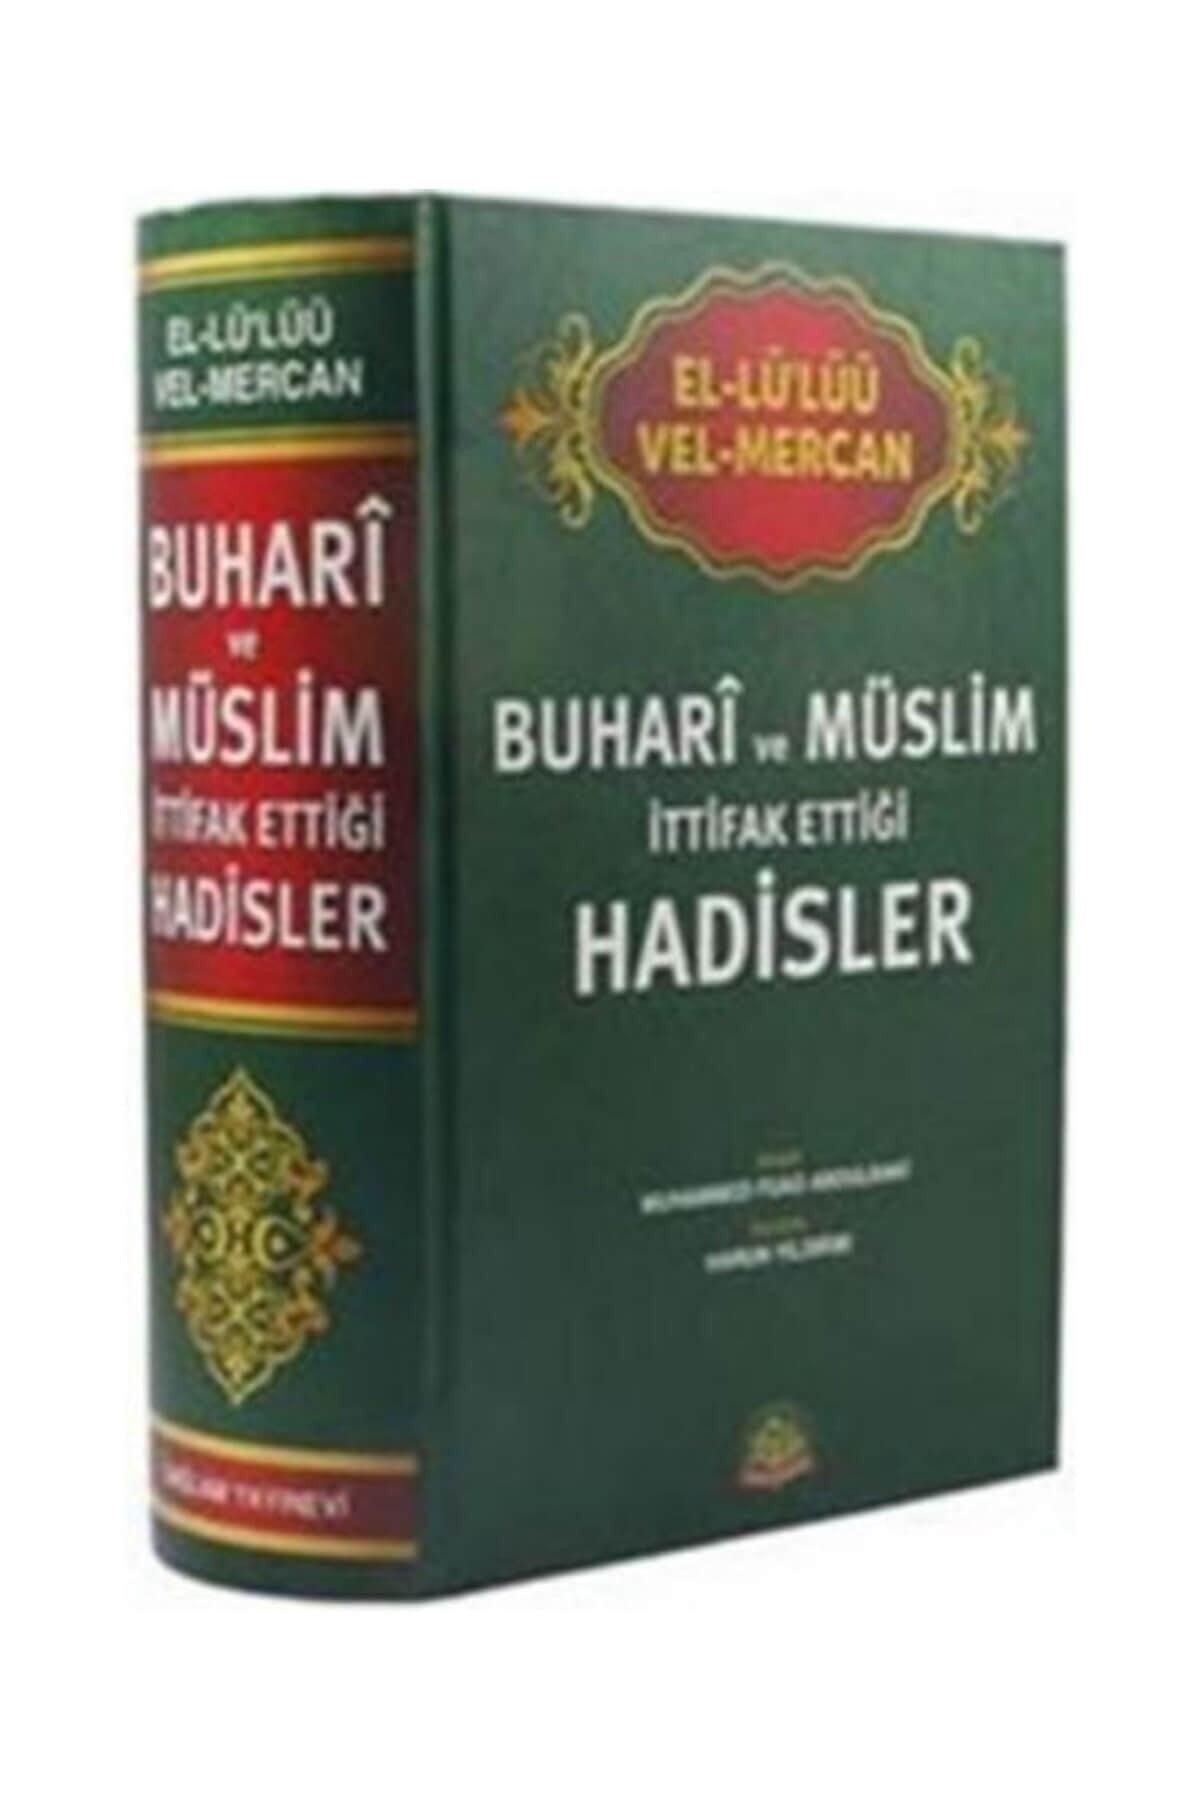 Bukhari and Muslim Allied Hadiths - Muhammad Fuad Abdulbaki - Swordslife